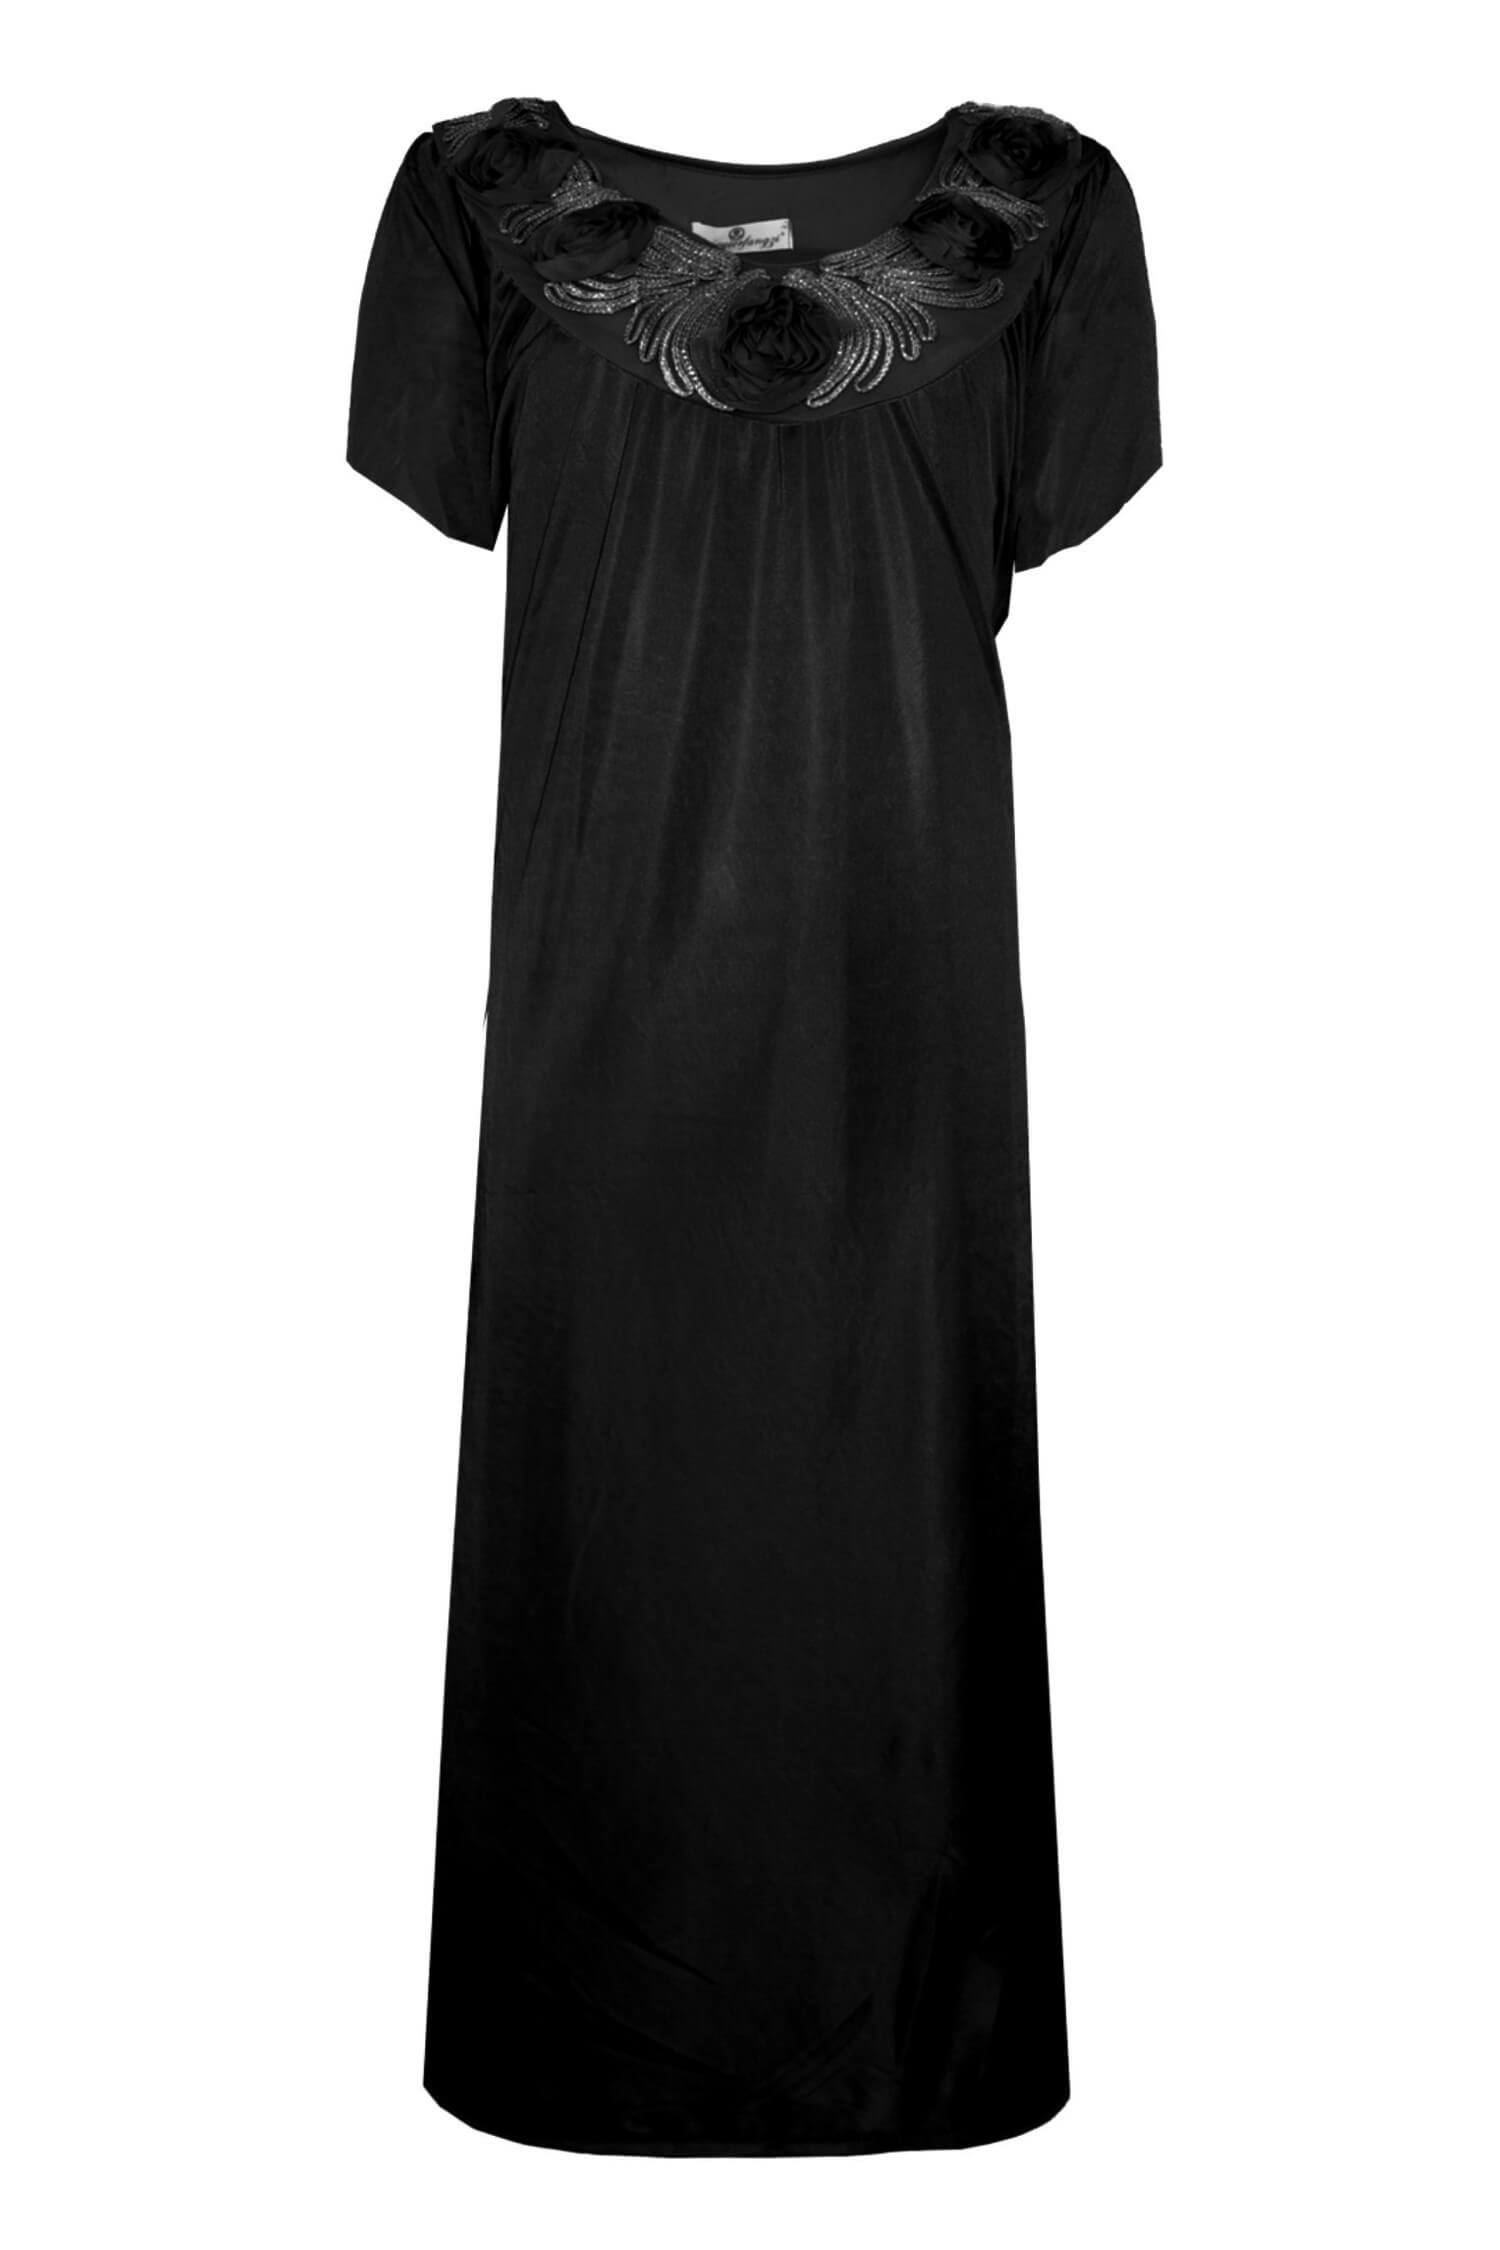 Hanička noční košilka s krátkým rukávem 1105 XXL černá